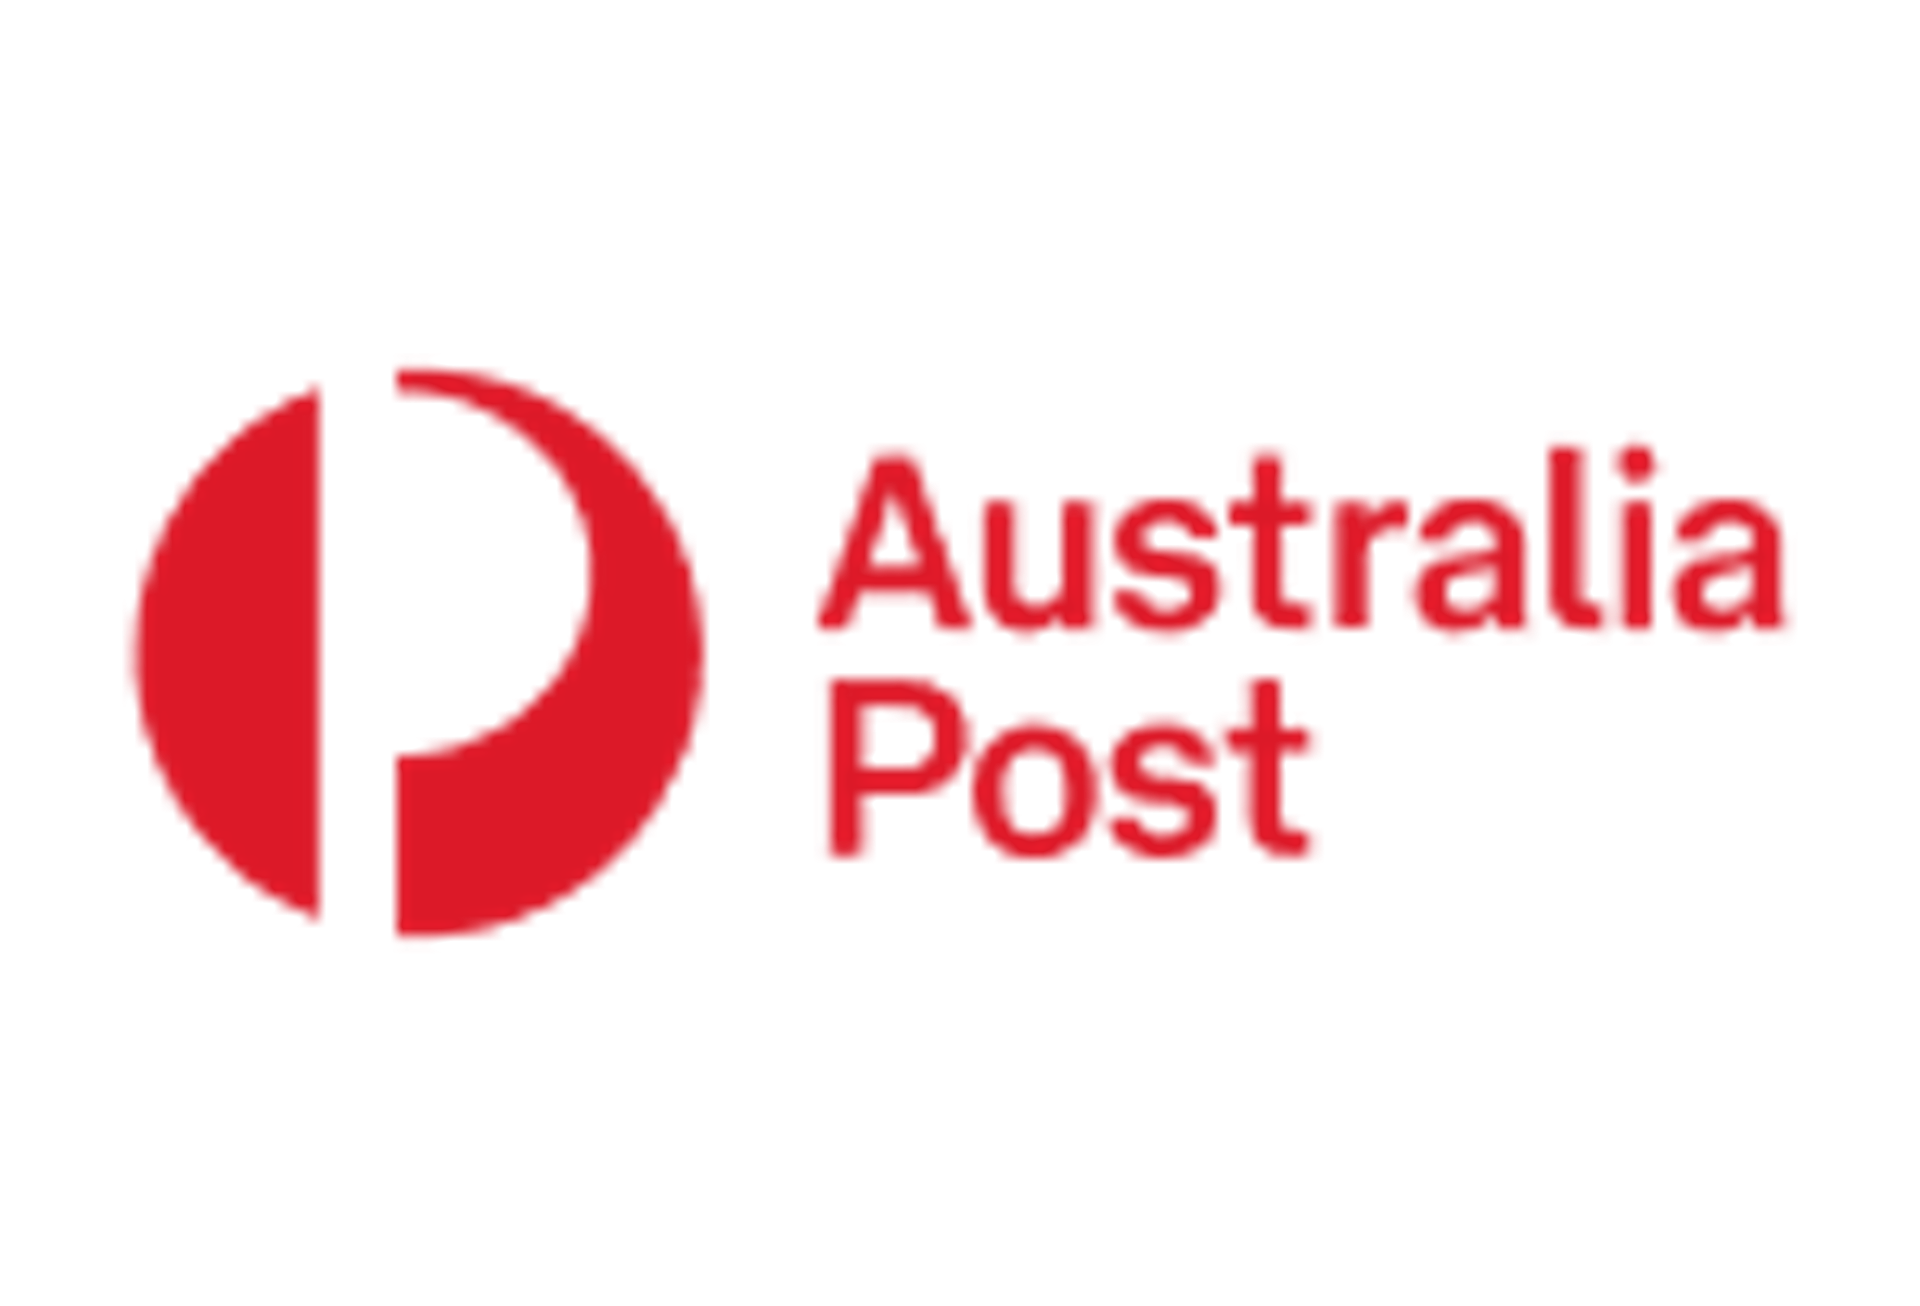 Australia-post-logo